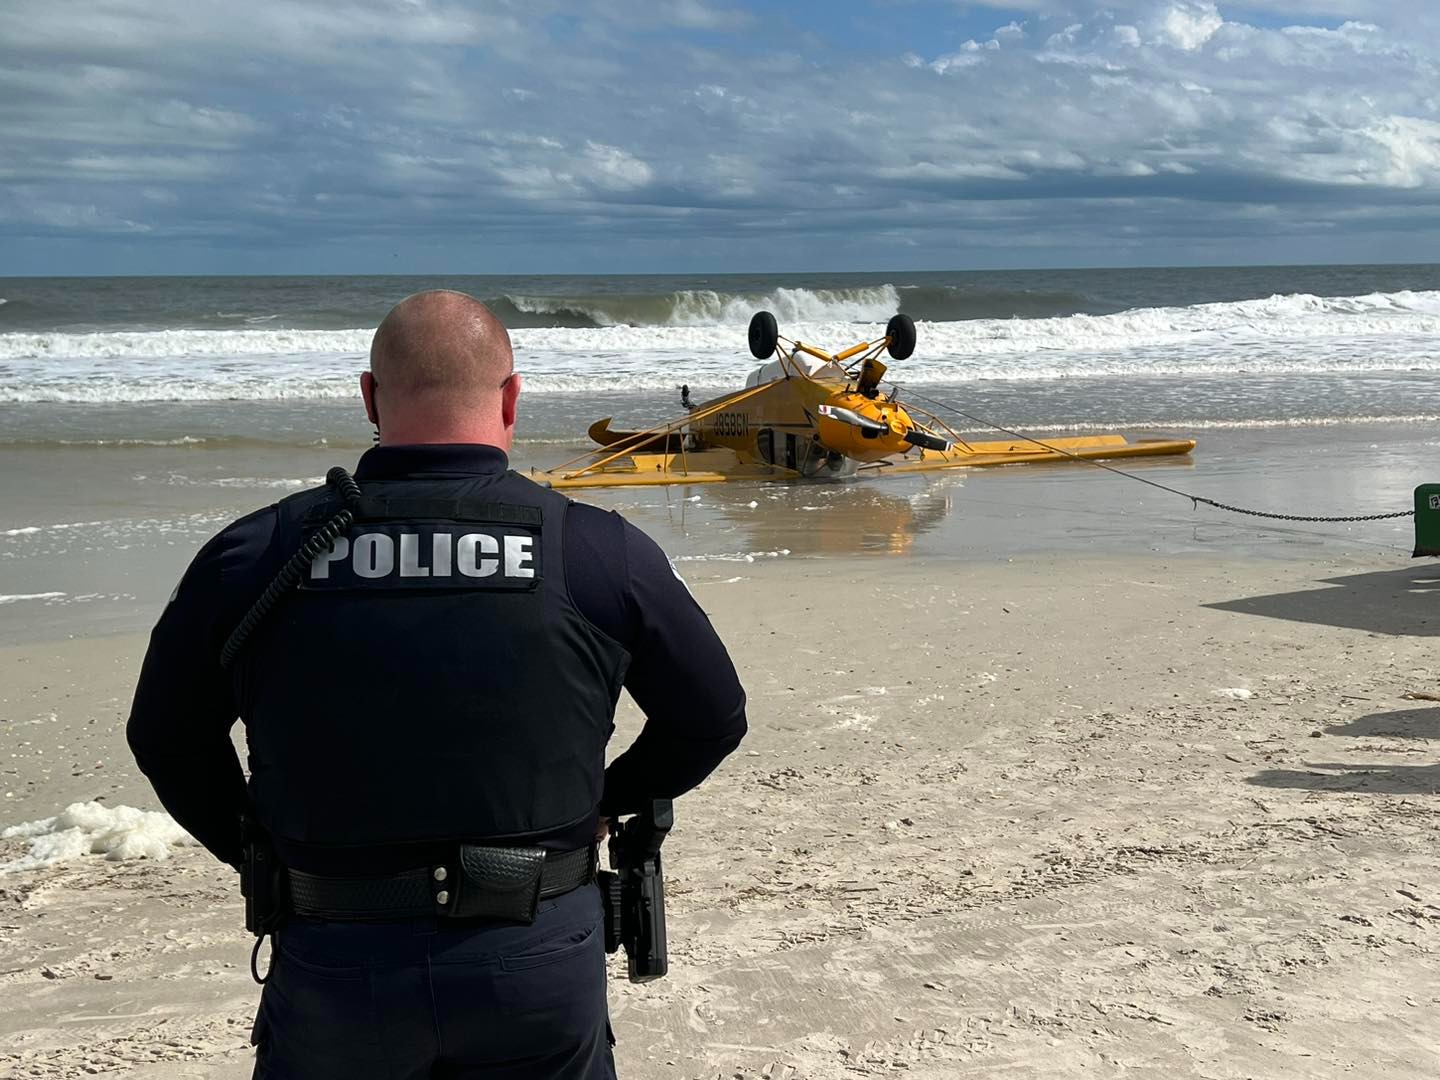 Avioneta se estrella aparatosamente en playa de Florida y milagrosamente el piloto sale ileso (FOTOS)